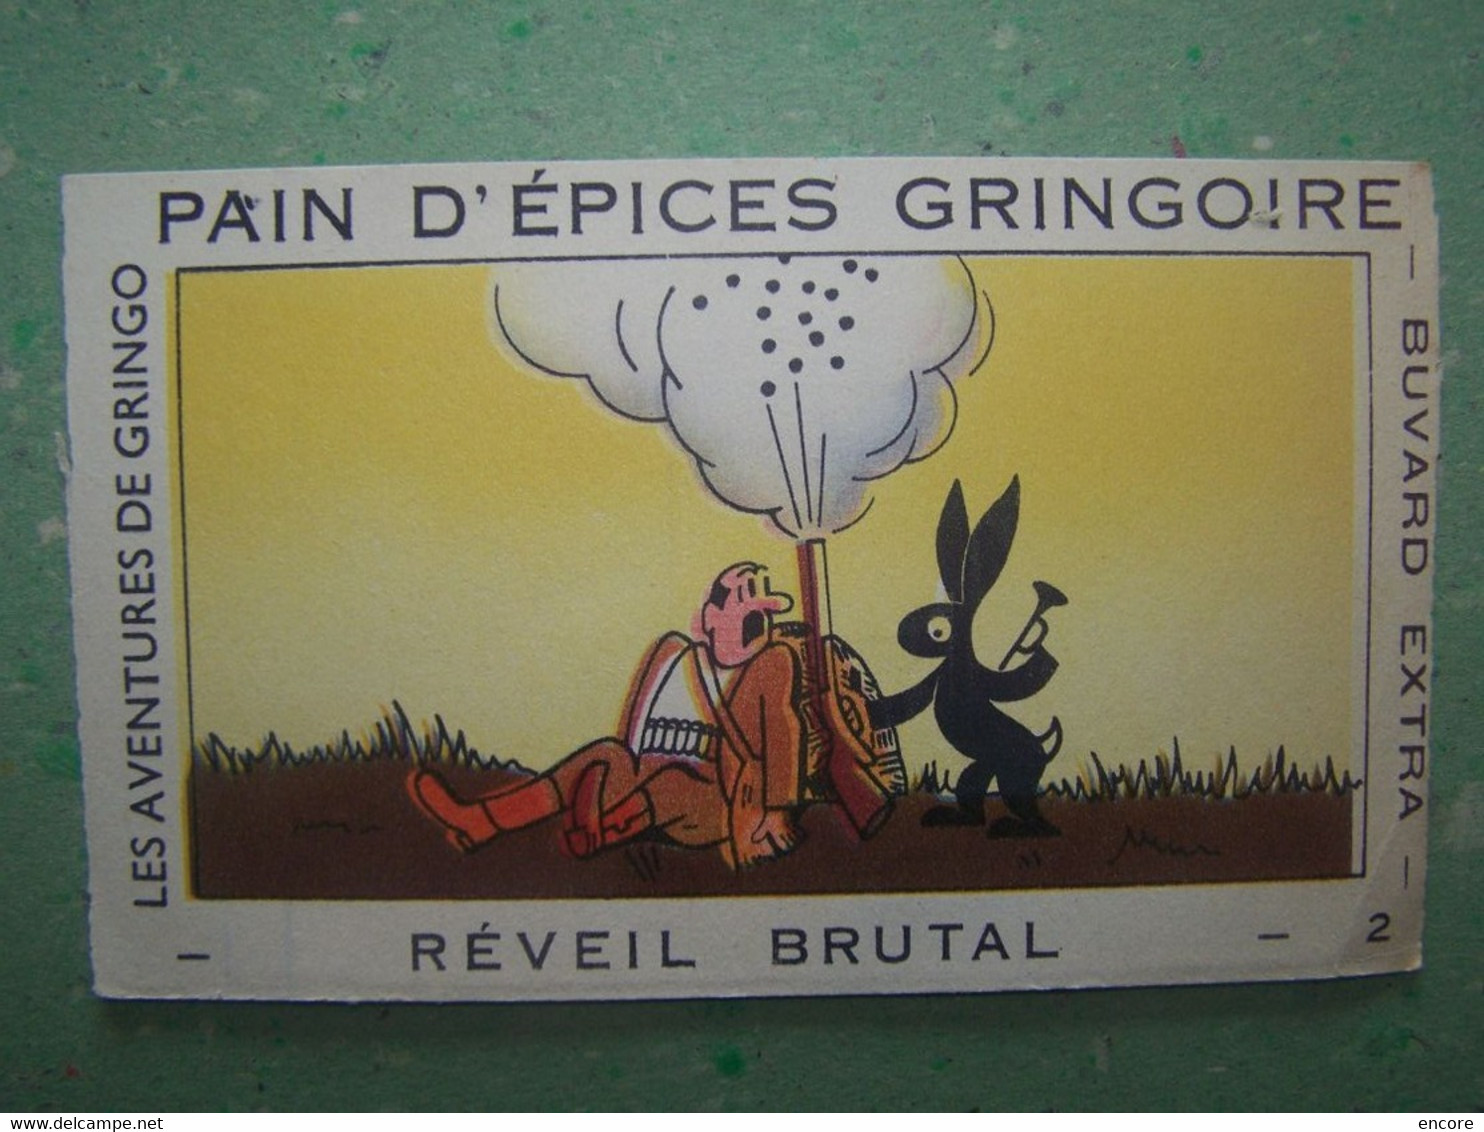 BUVARD. PUBLICITE "PAIN D'EPICES GRINGOIRE". LA CHASSE. REVEIL BRUTAL. 100_7026TRC"a" - Peperkoeken